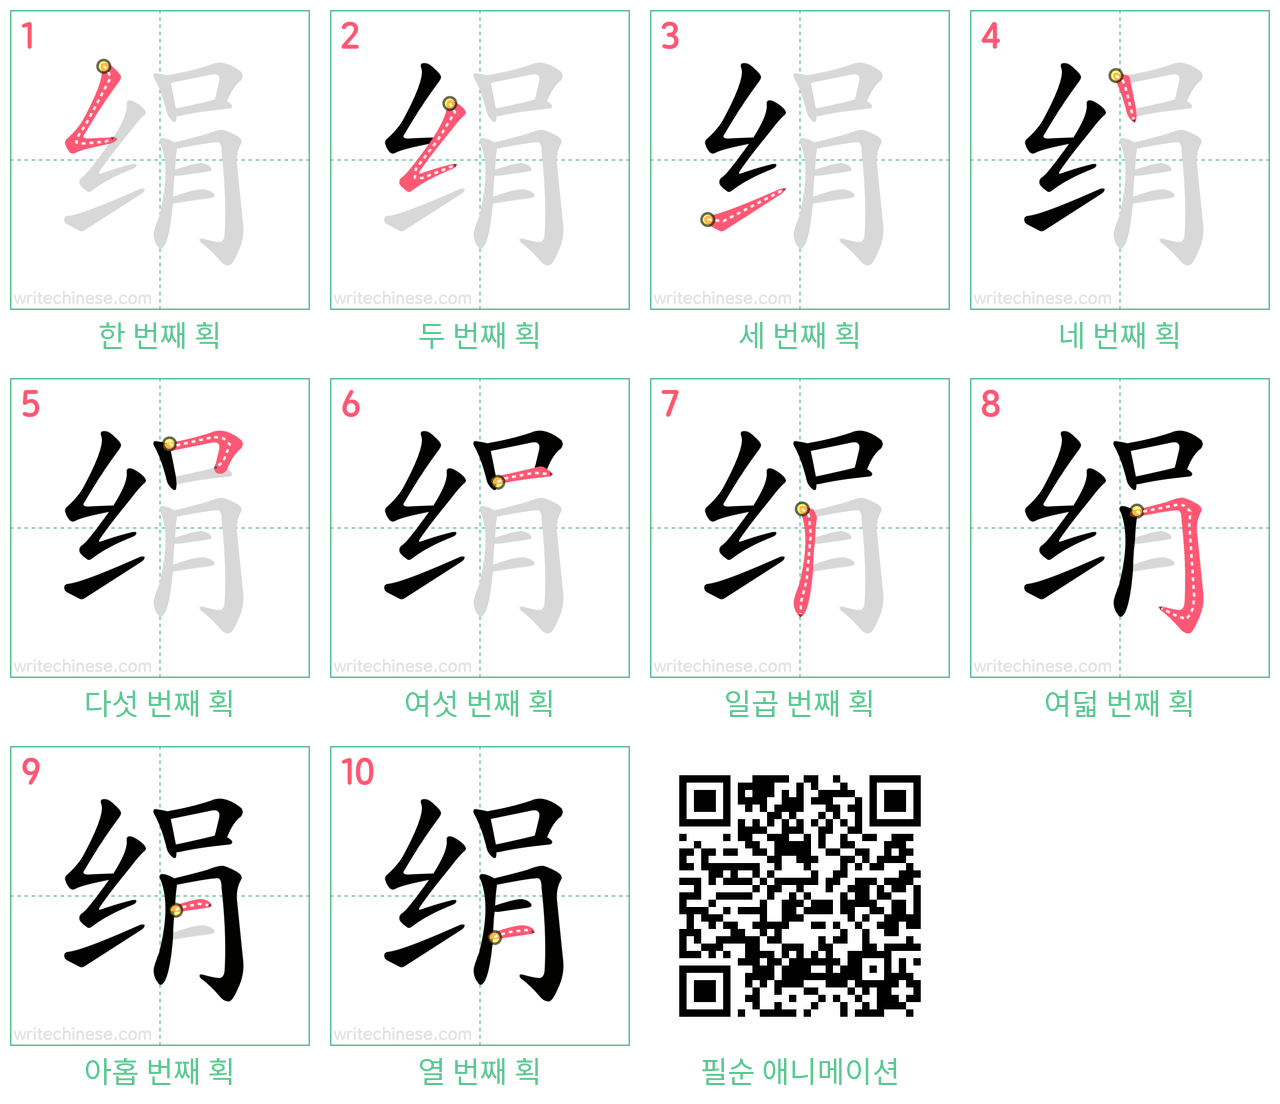 绢 step-by-step stroke order diagrams